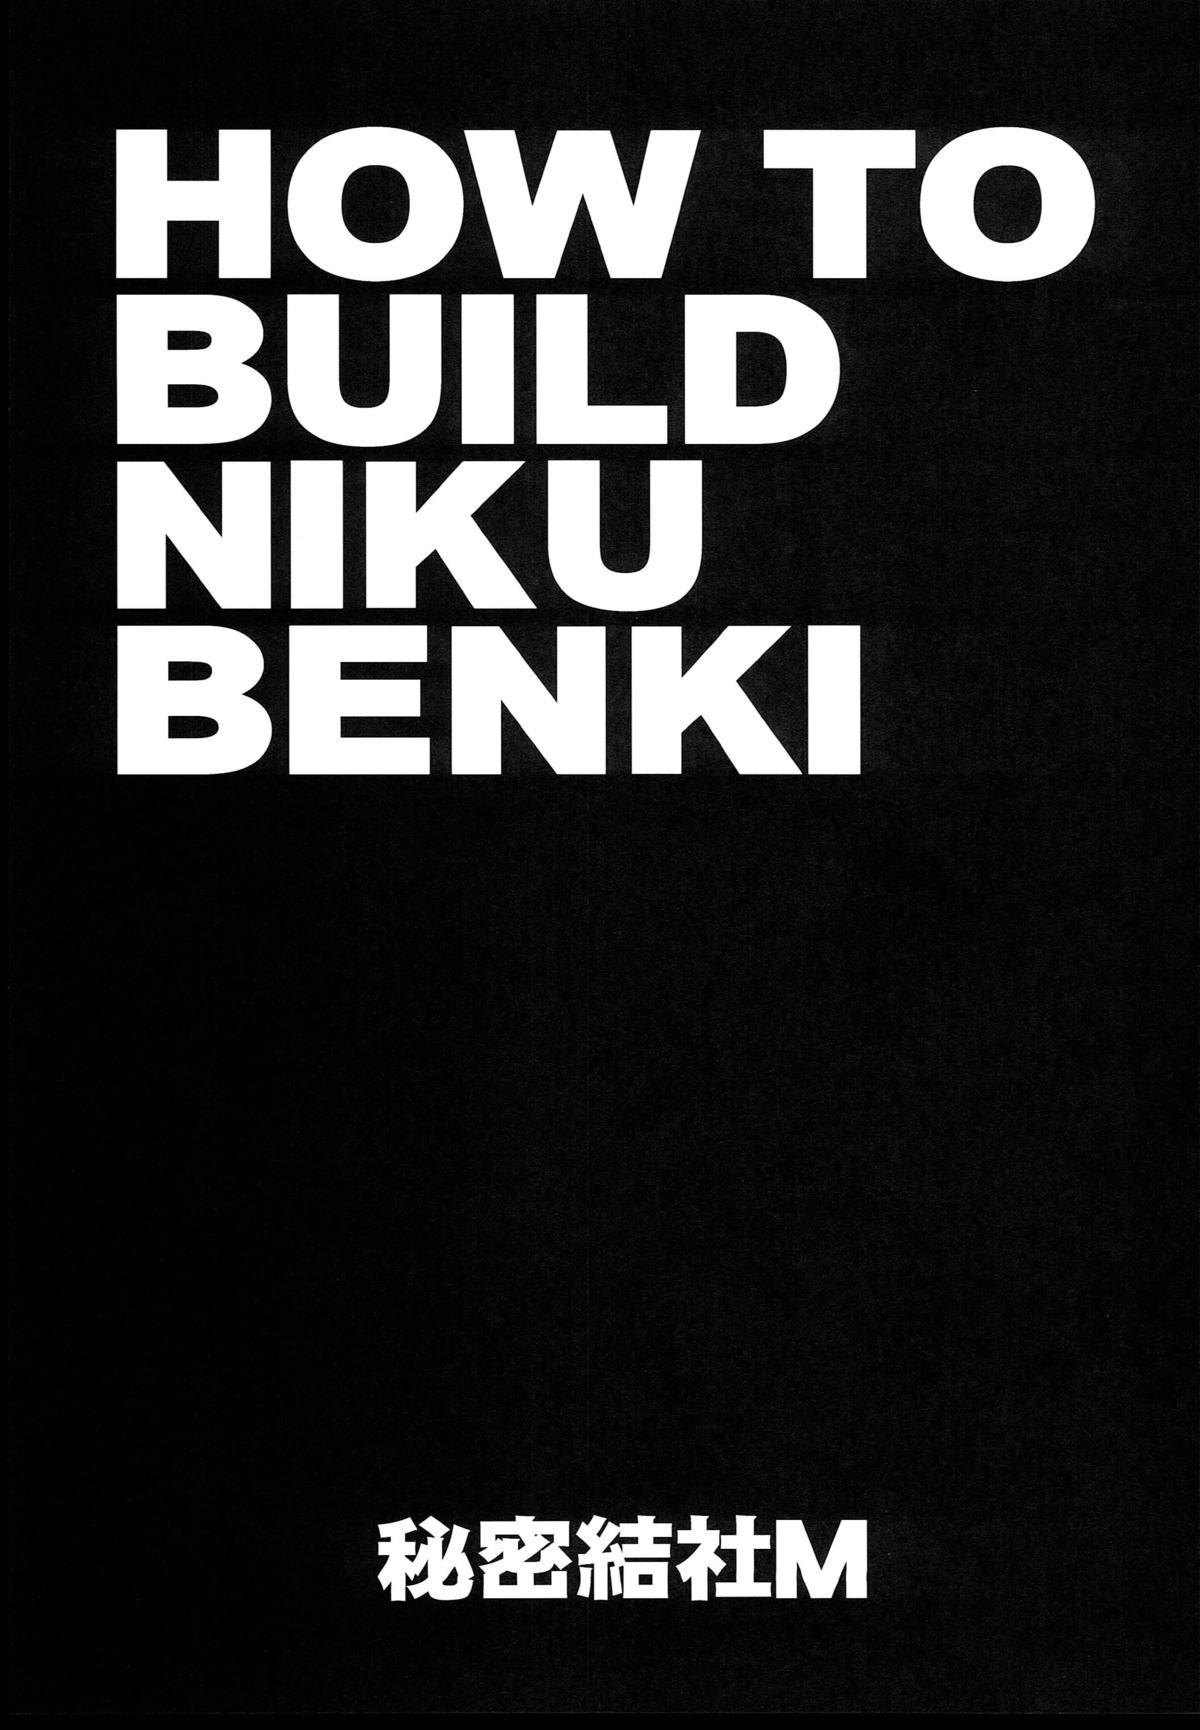 HOW TO BUILD NIKUBENKI 2